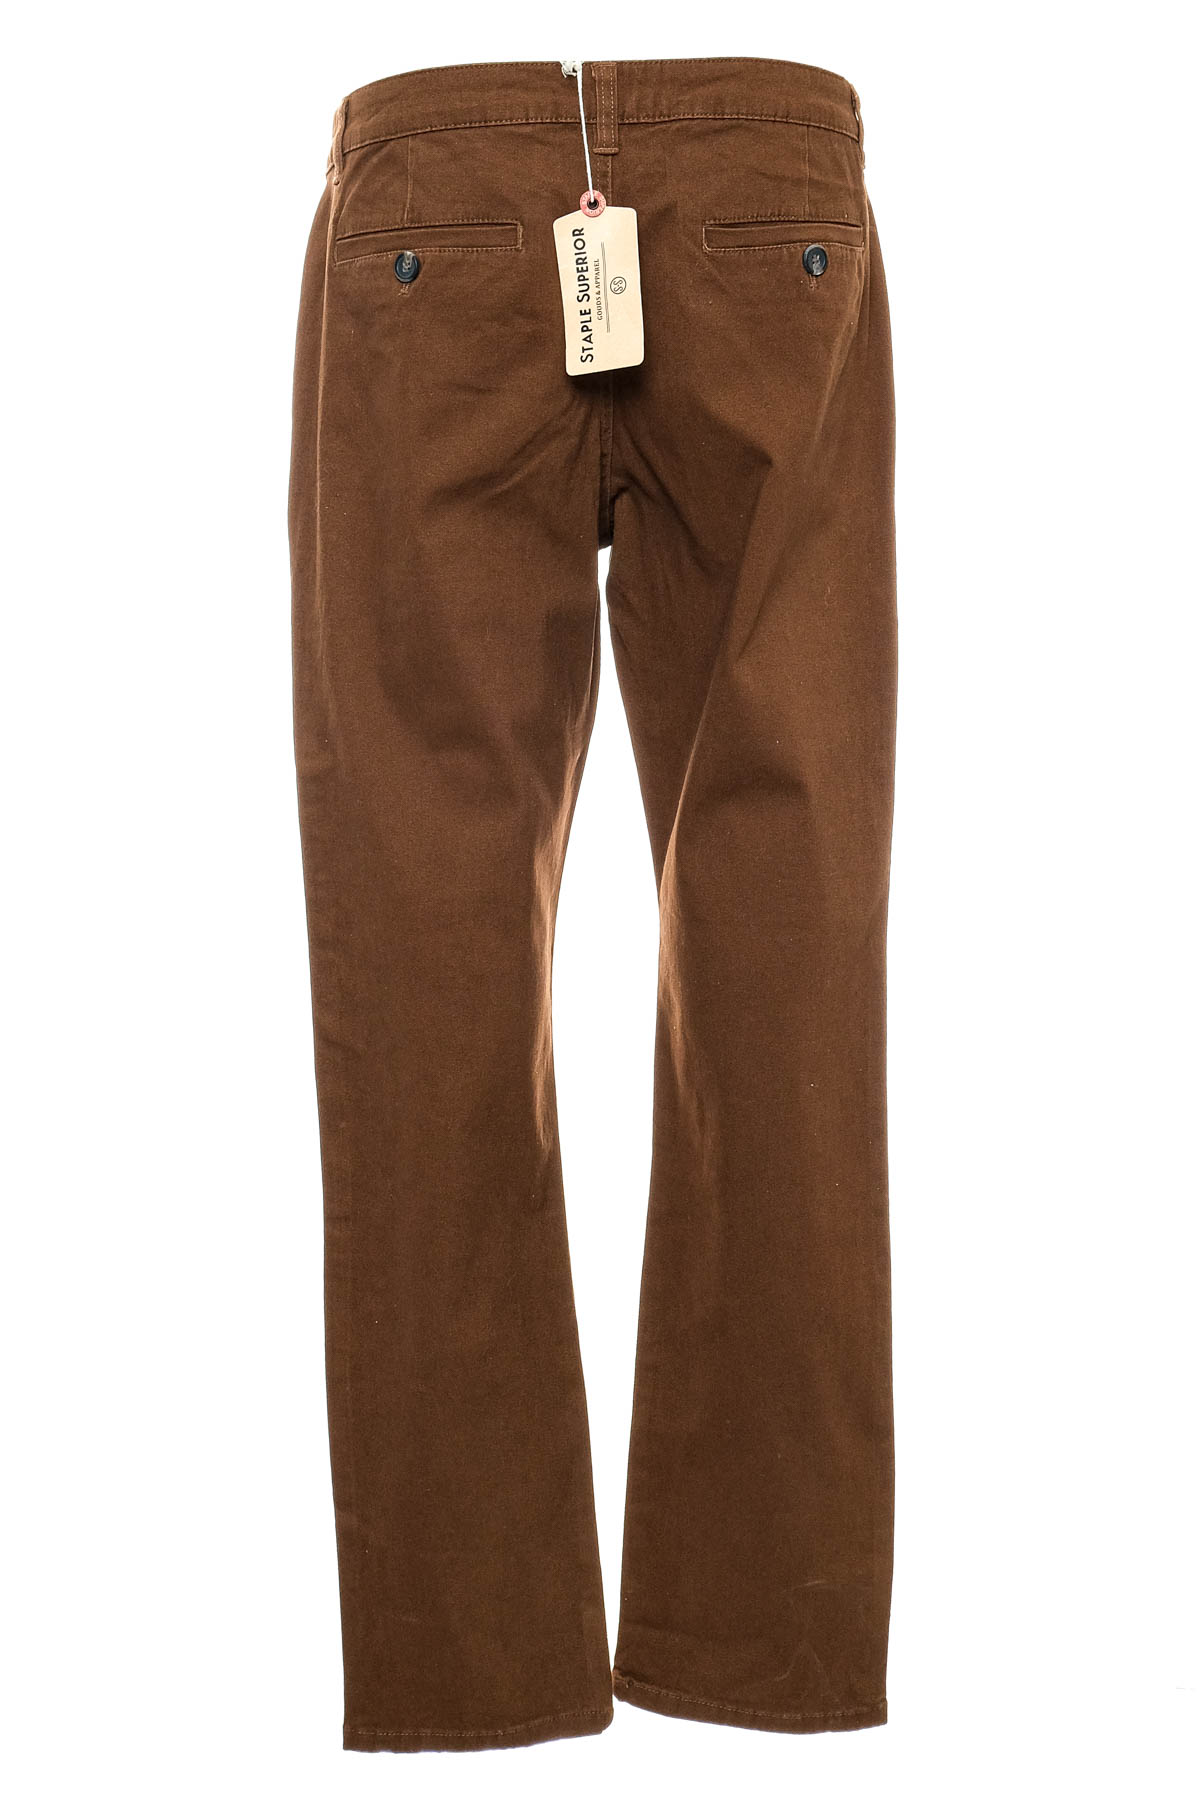 Men's trousers - Staple Superior - 1